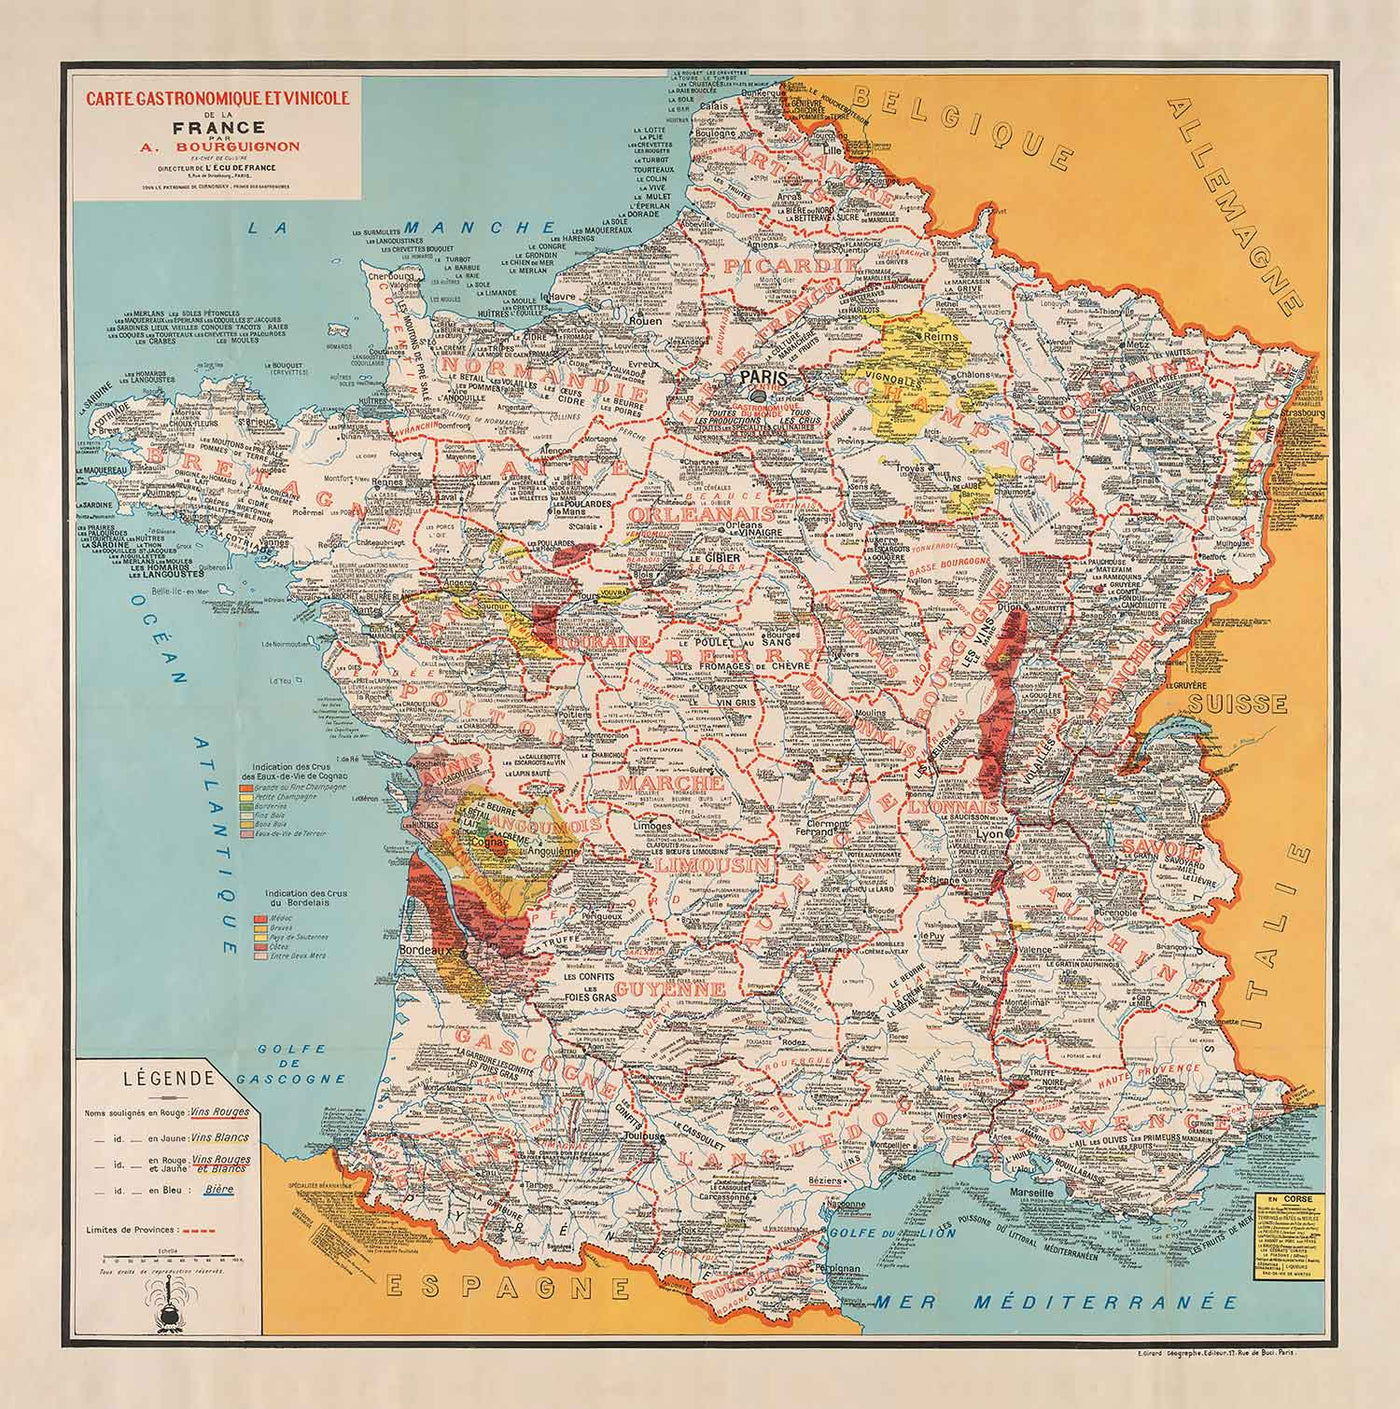 Ancienne carte gastronomique de France en 1932 par Alain Bourguignon - Alimentation française, Michelin, Champagne, Bordeaux, Beurre, Fromage, etc.